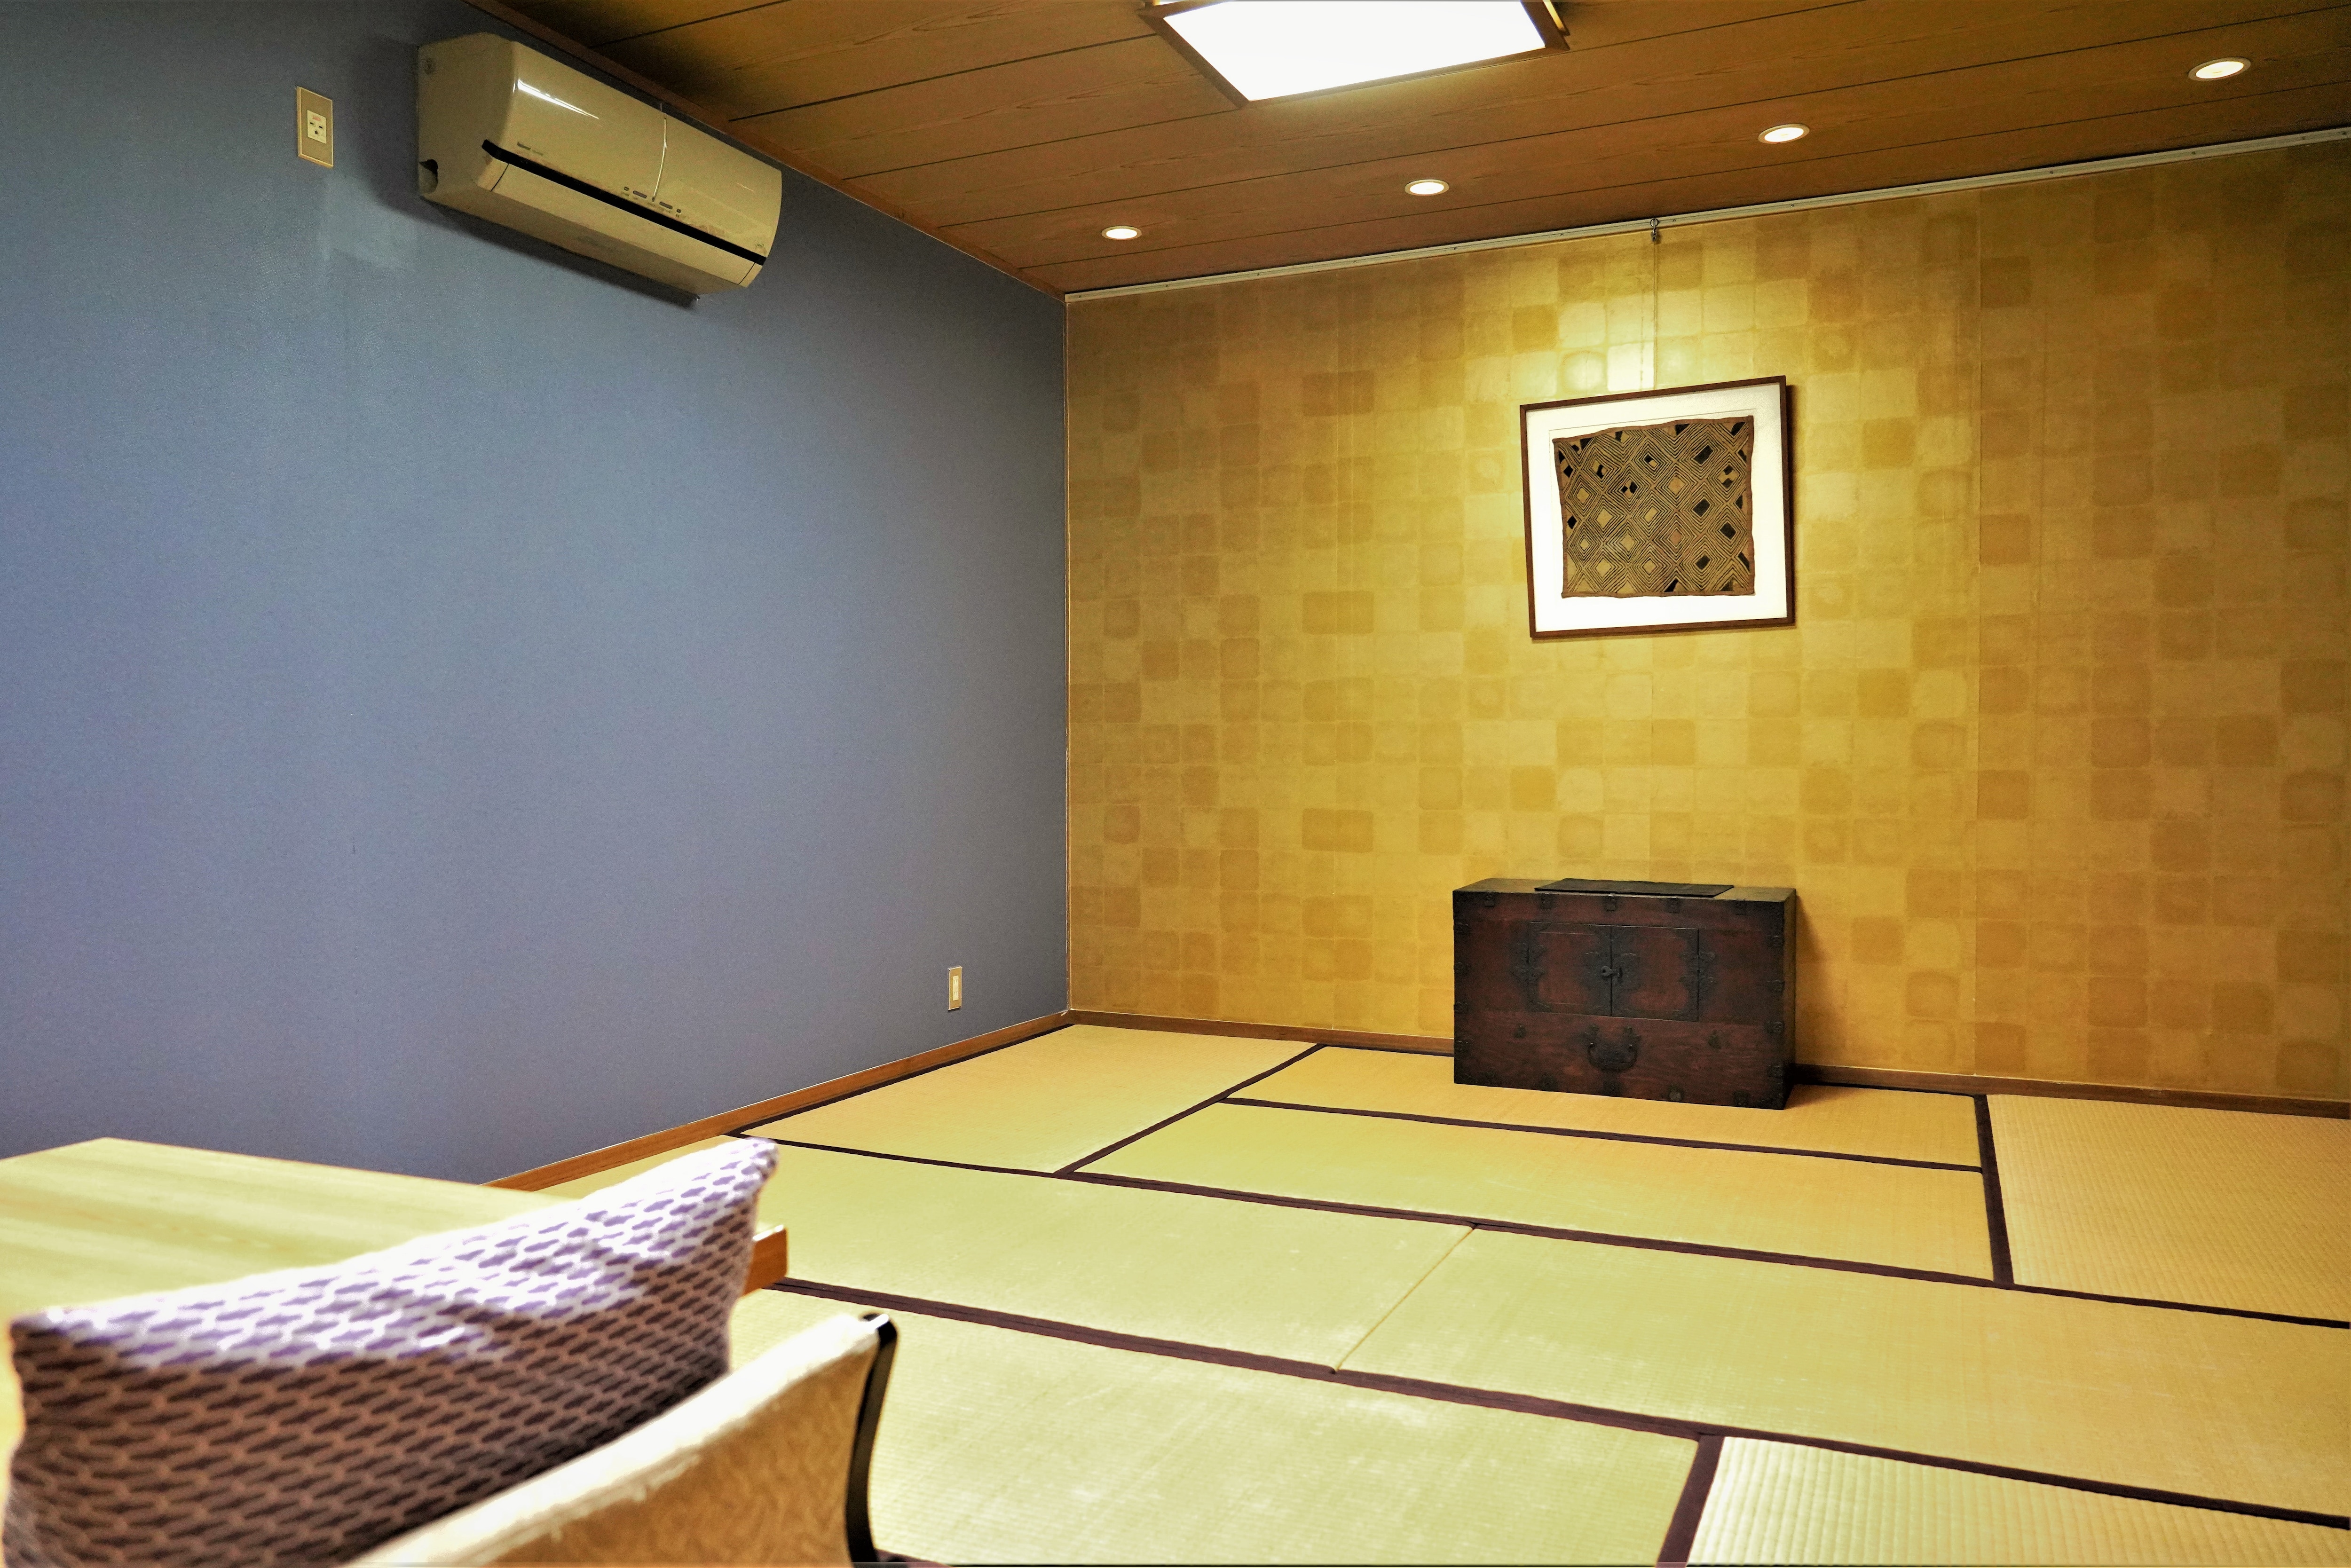 ห้องพักสไตล์ญี่ปุ่นขนาด 10 เสื่อทาทามิ